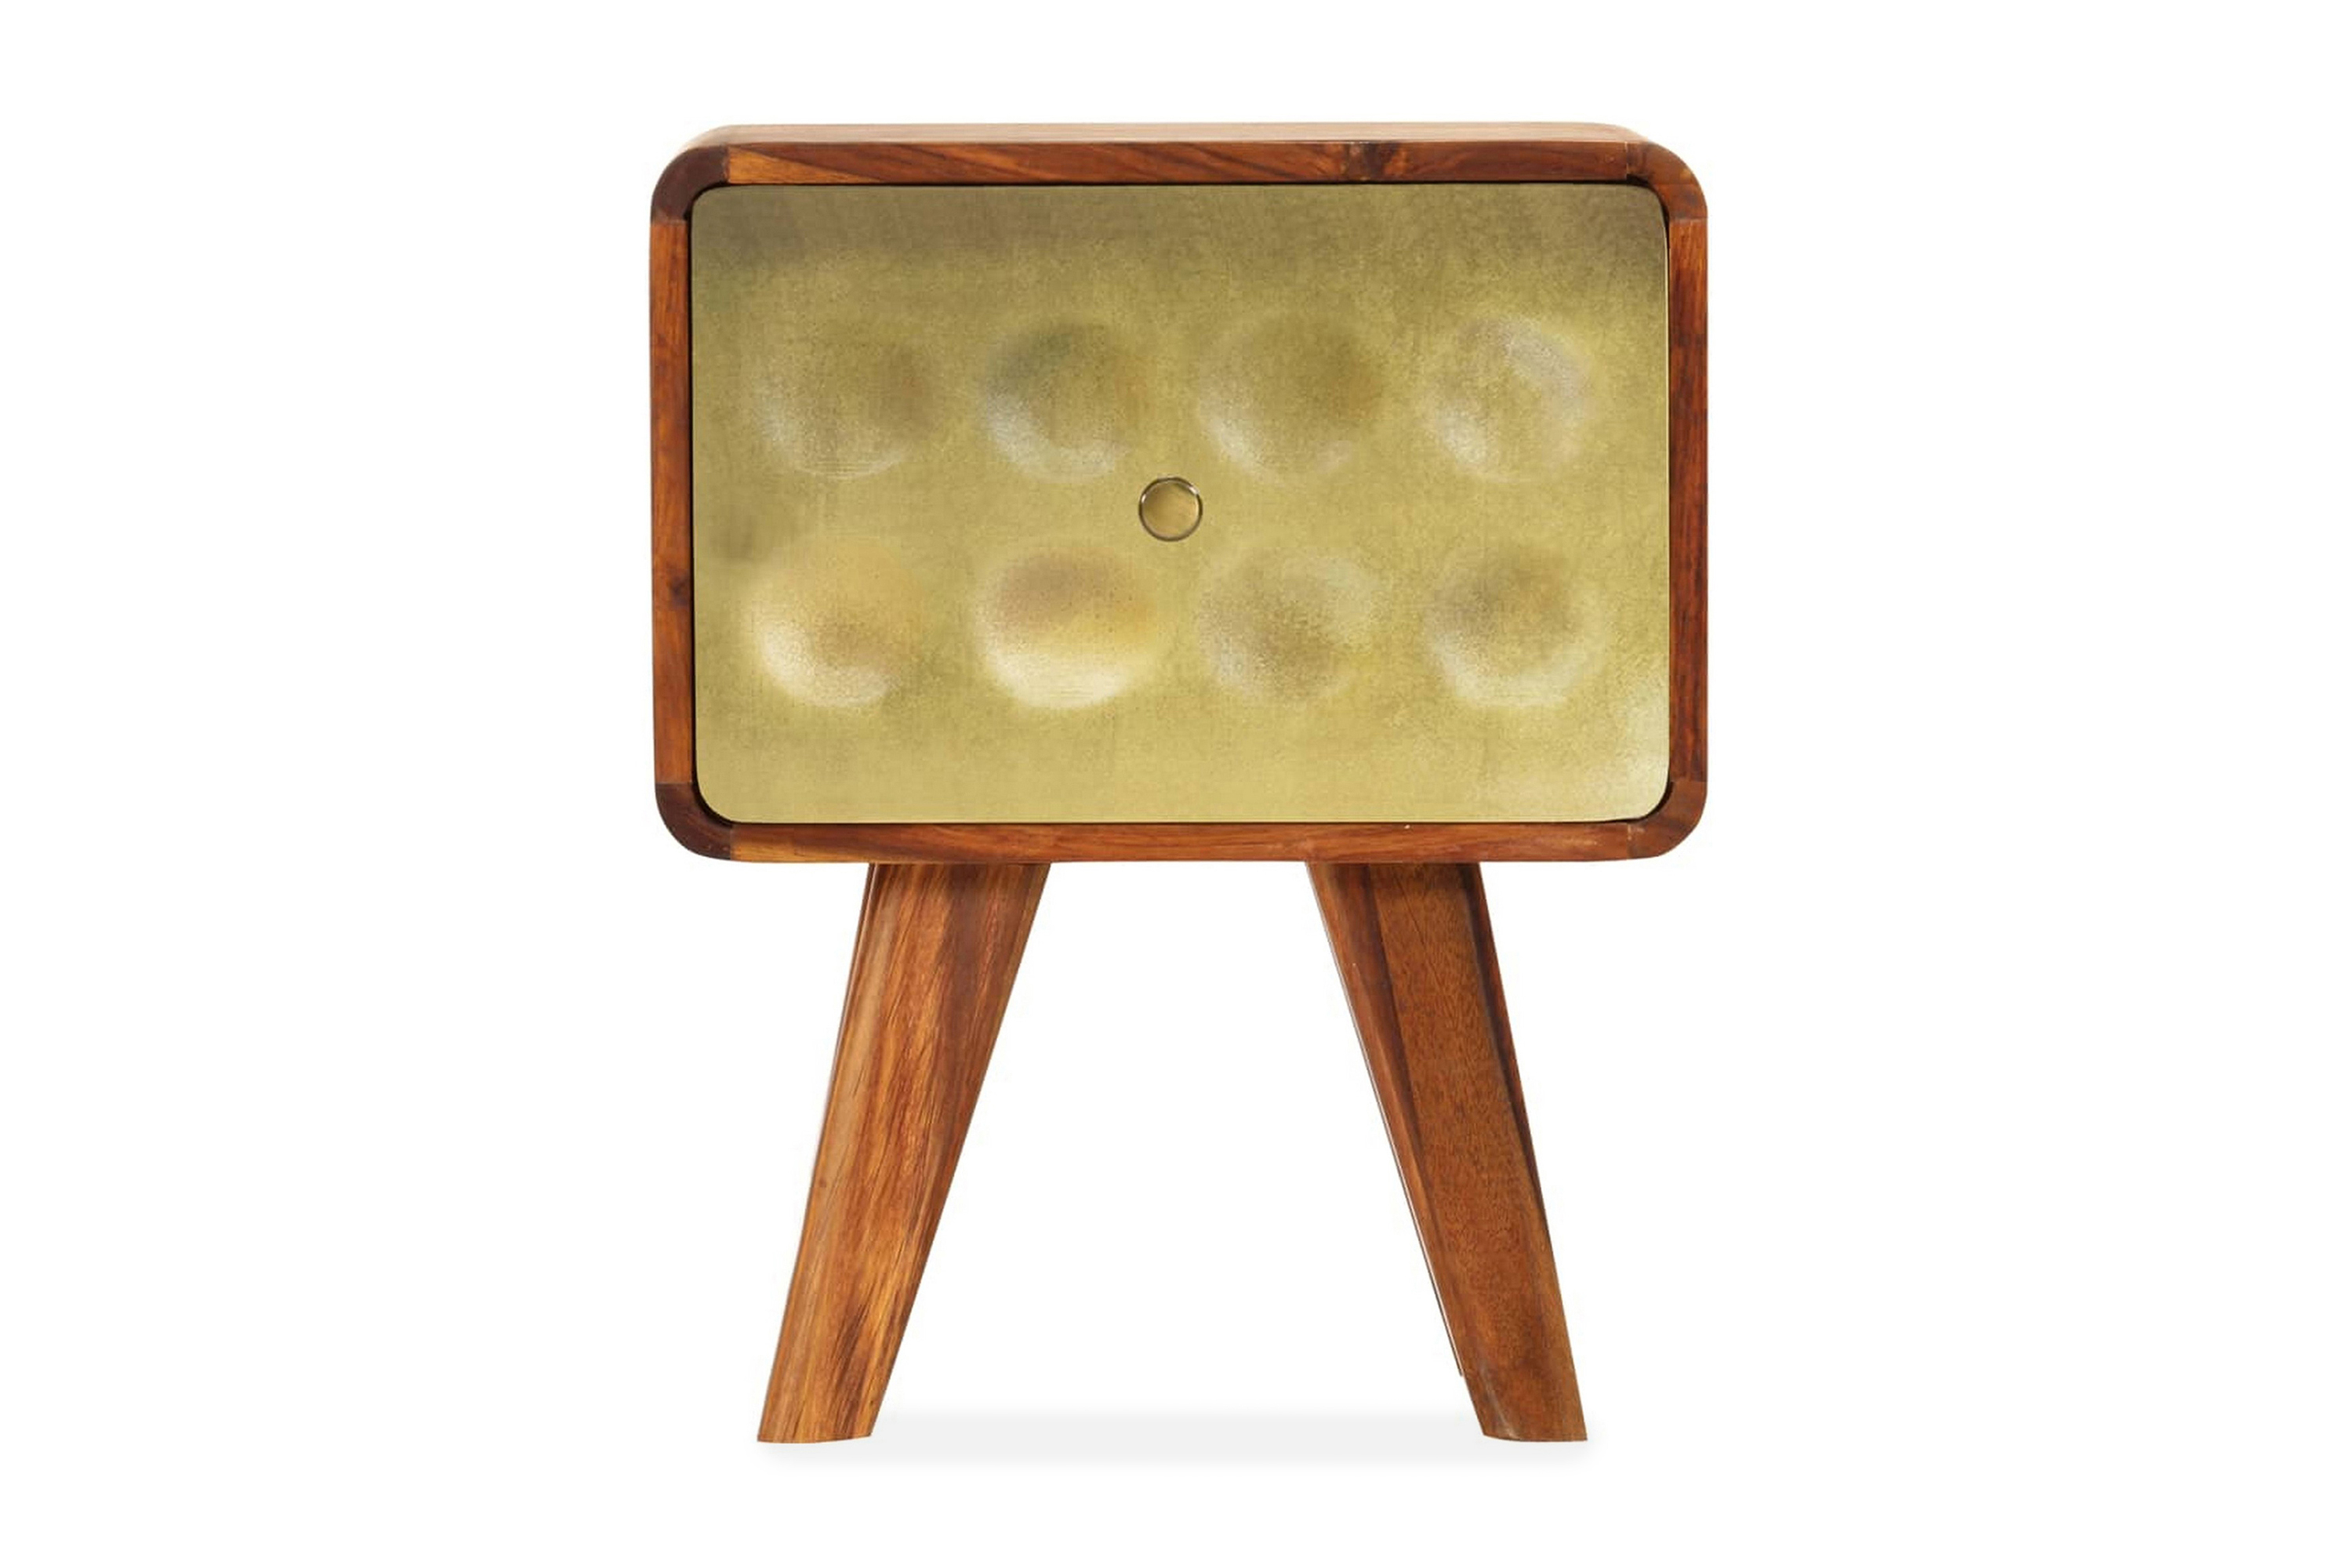 Sängbord massivt sheshamträ med guldtryck 49x40x30 cm – Brun